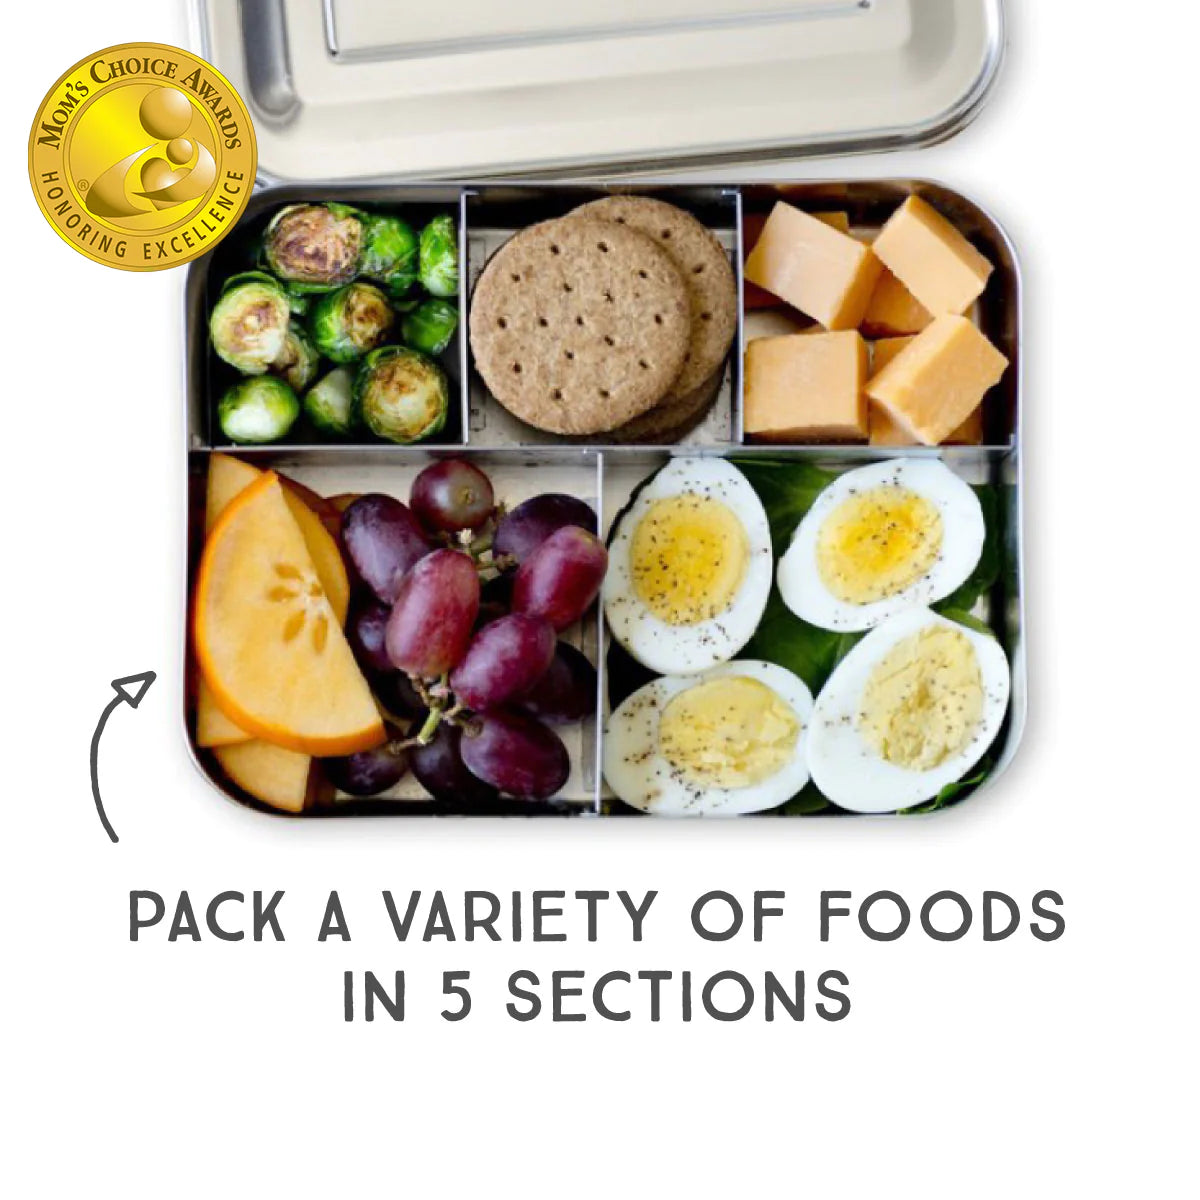 LunchBots - Large Cinco Bento Box | 5 Compartments | Aqua